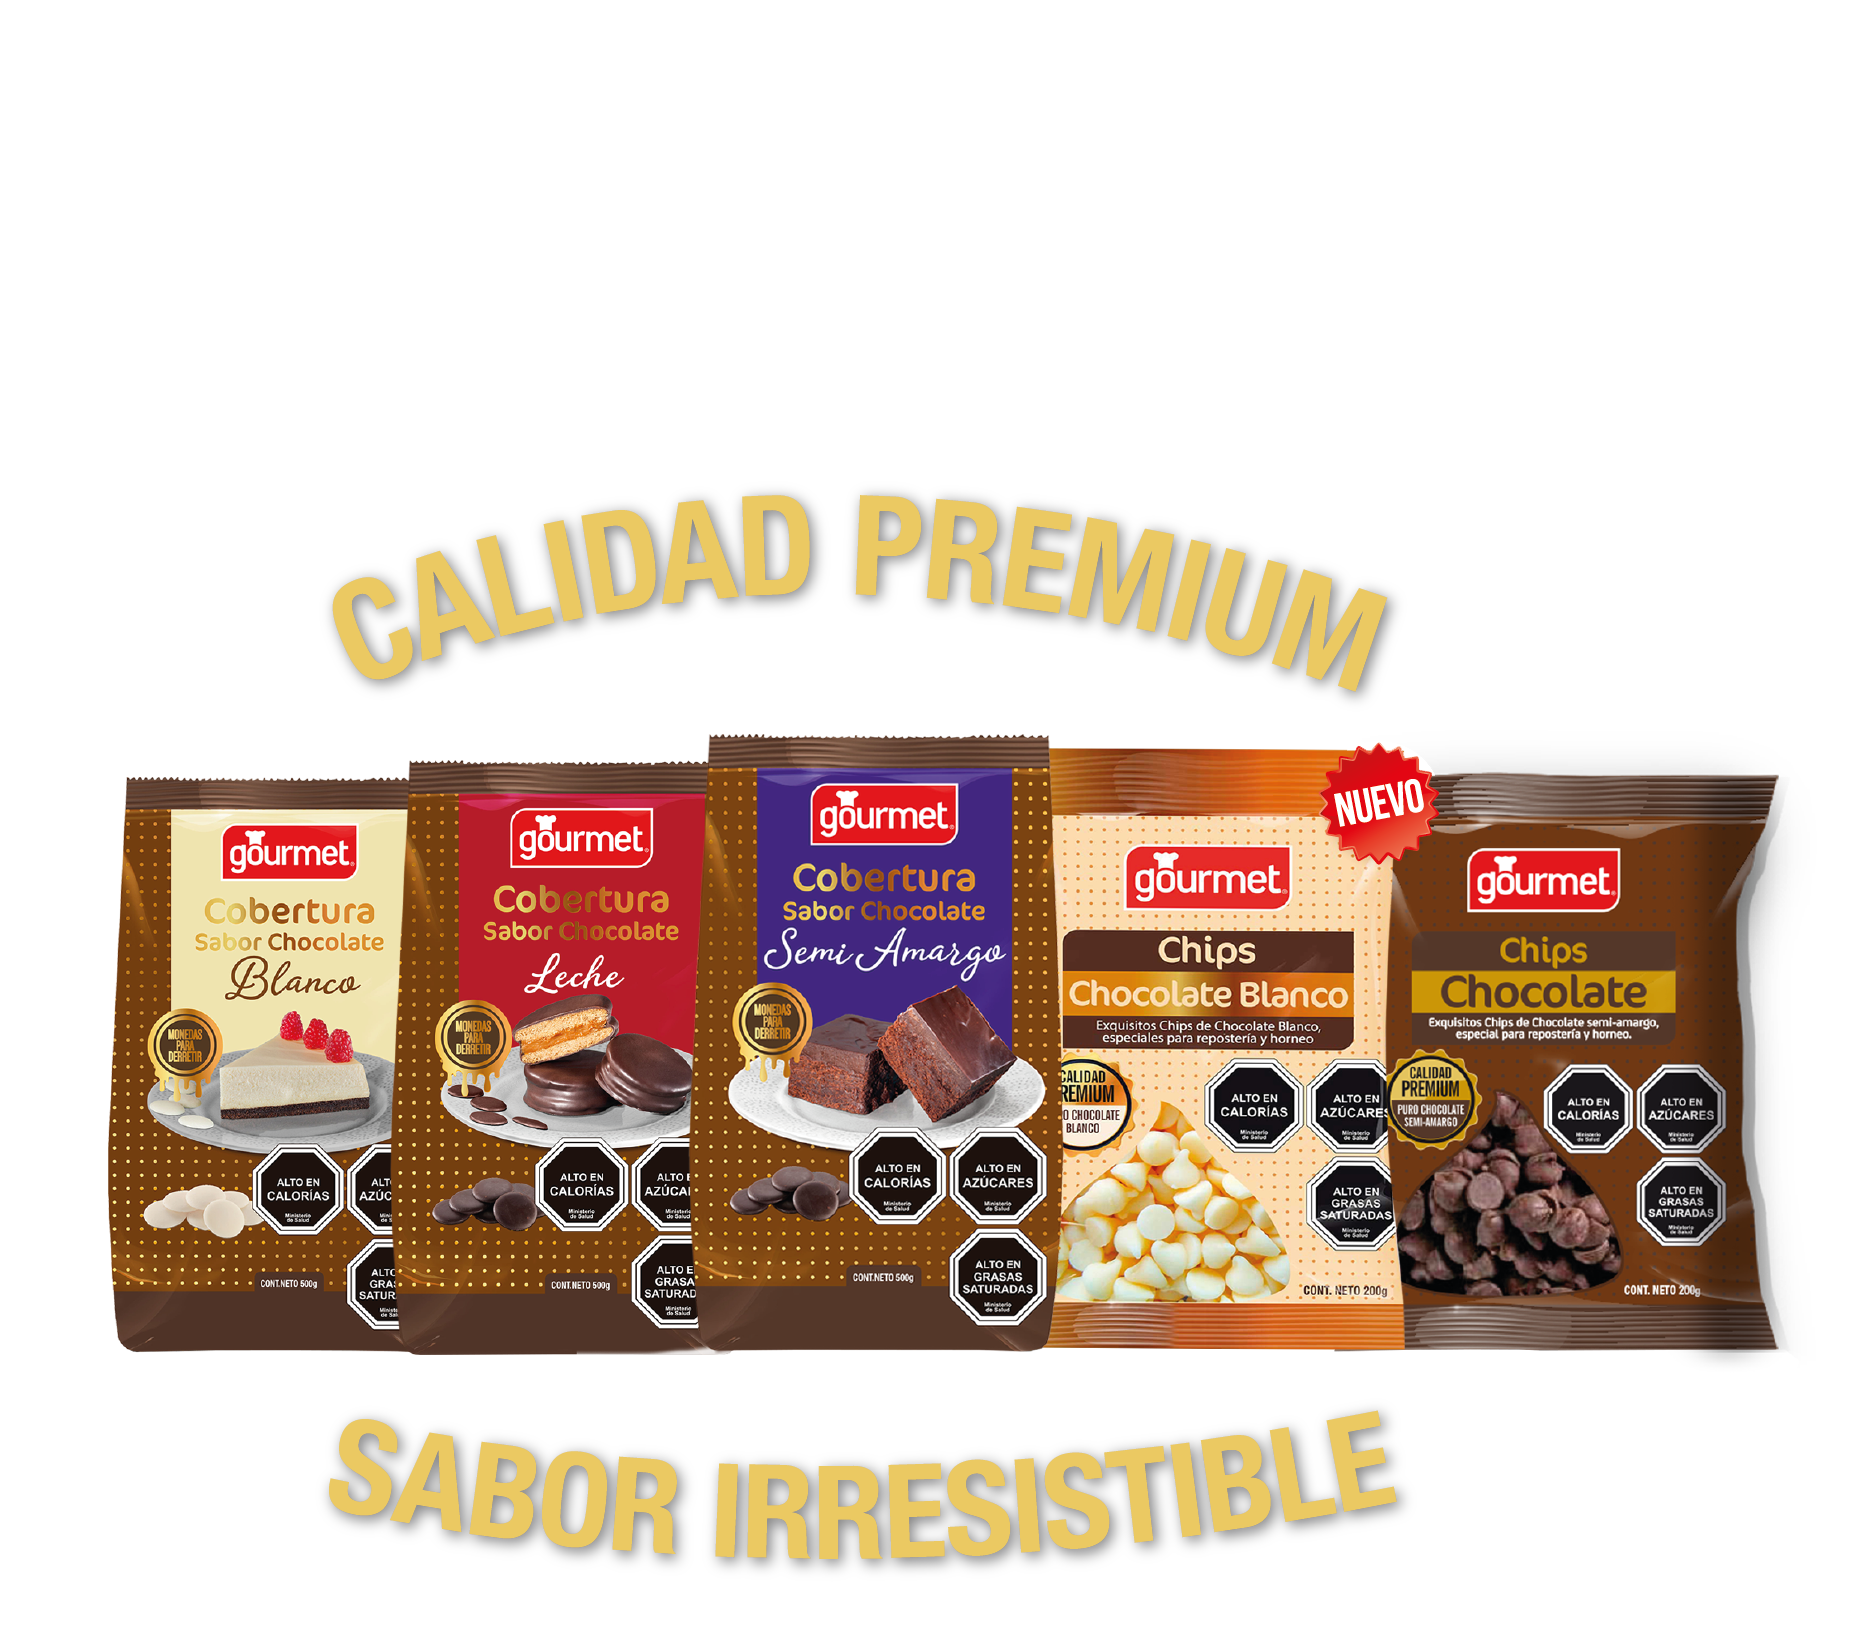 bodegón de productos - coberturas y chips de chocolate - calidad premium - sabor irresistible